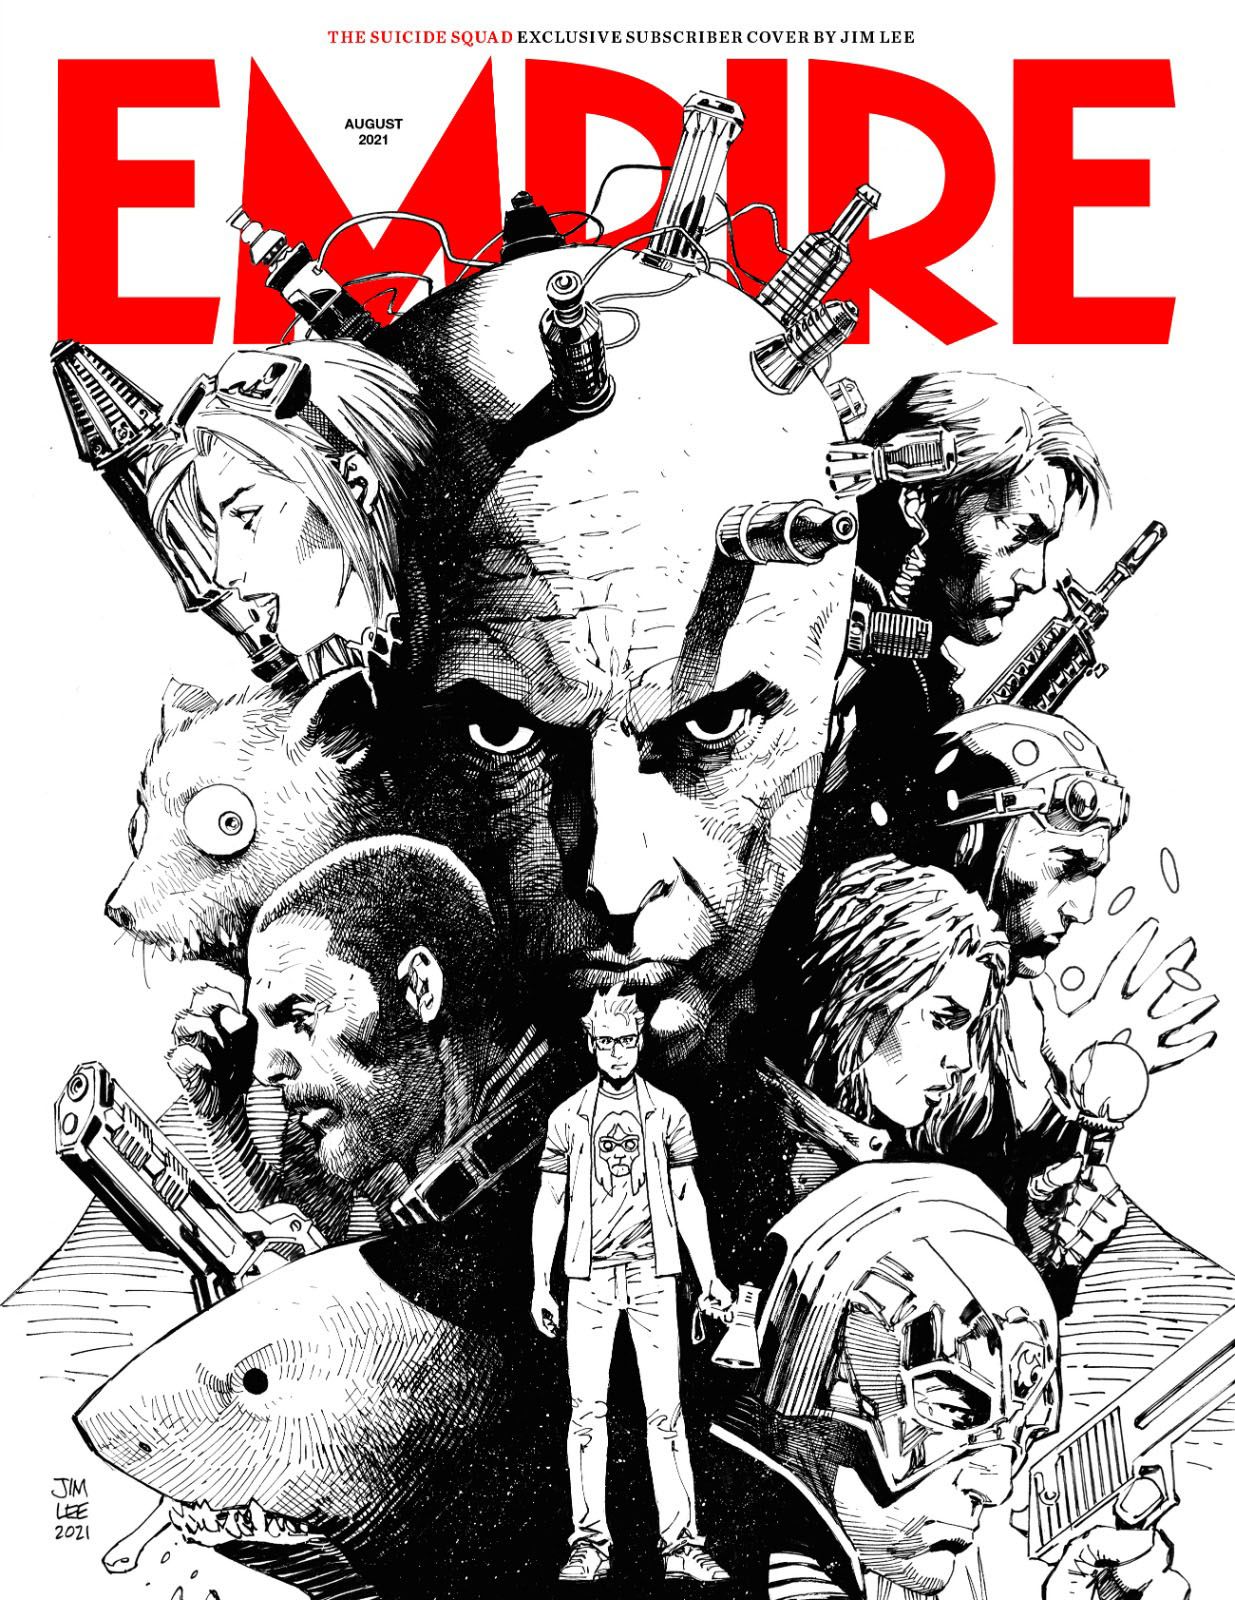 The Suicide Squad Empire Magazine Cover 